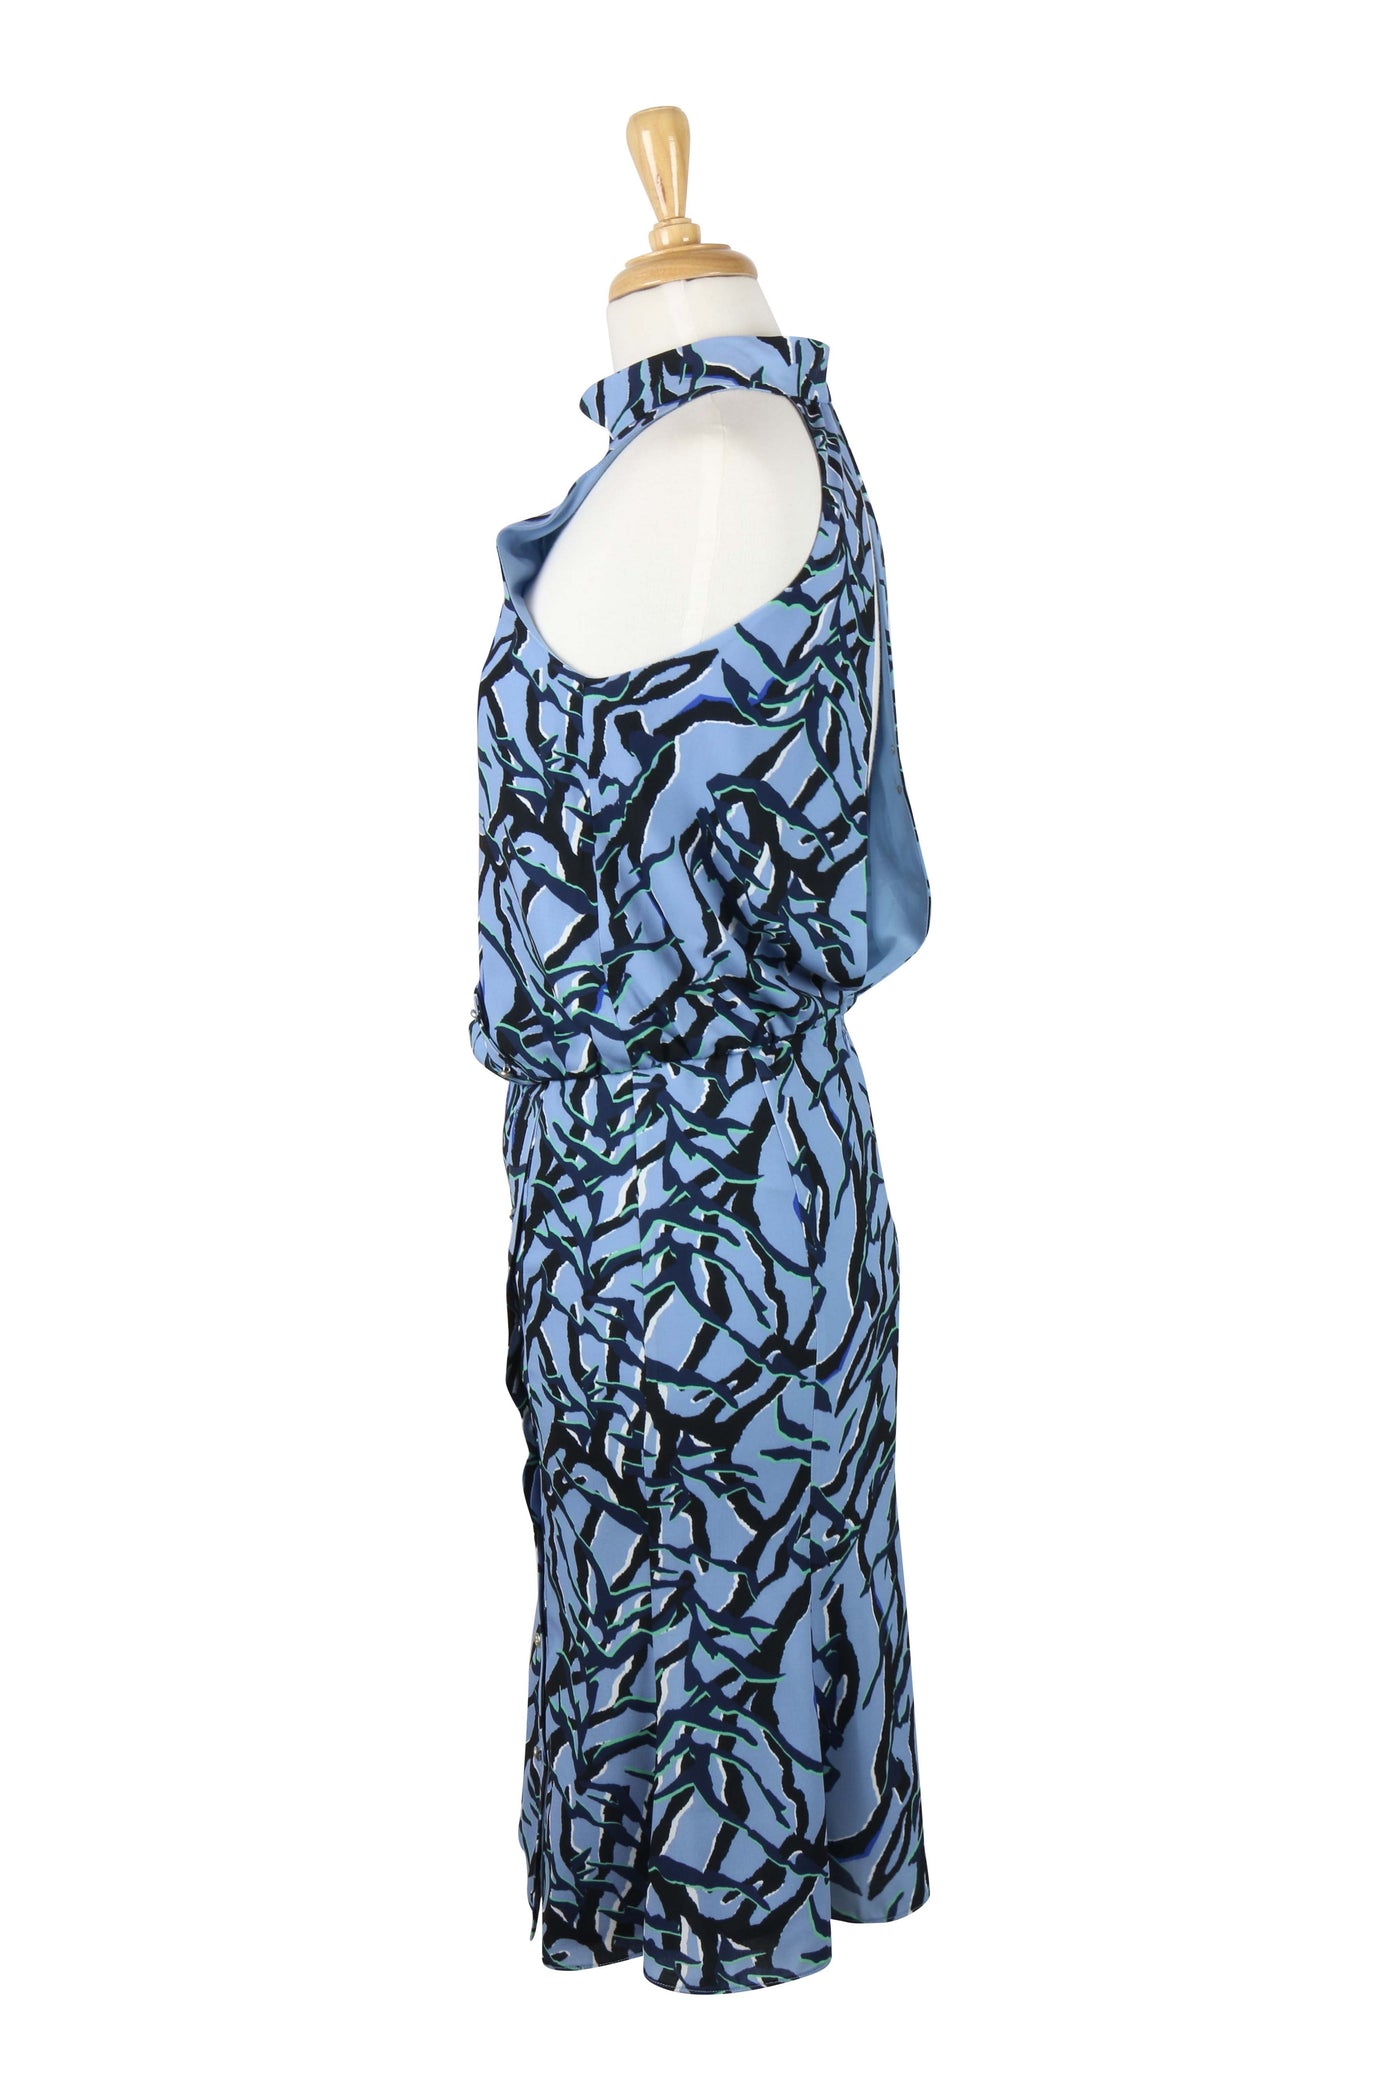 Etta blue print dress